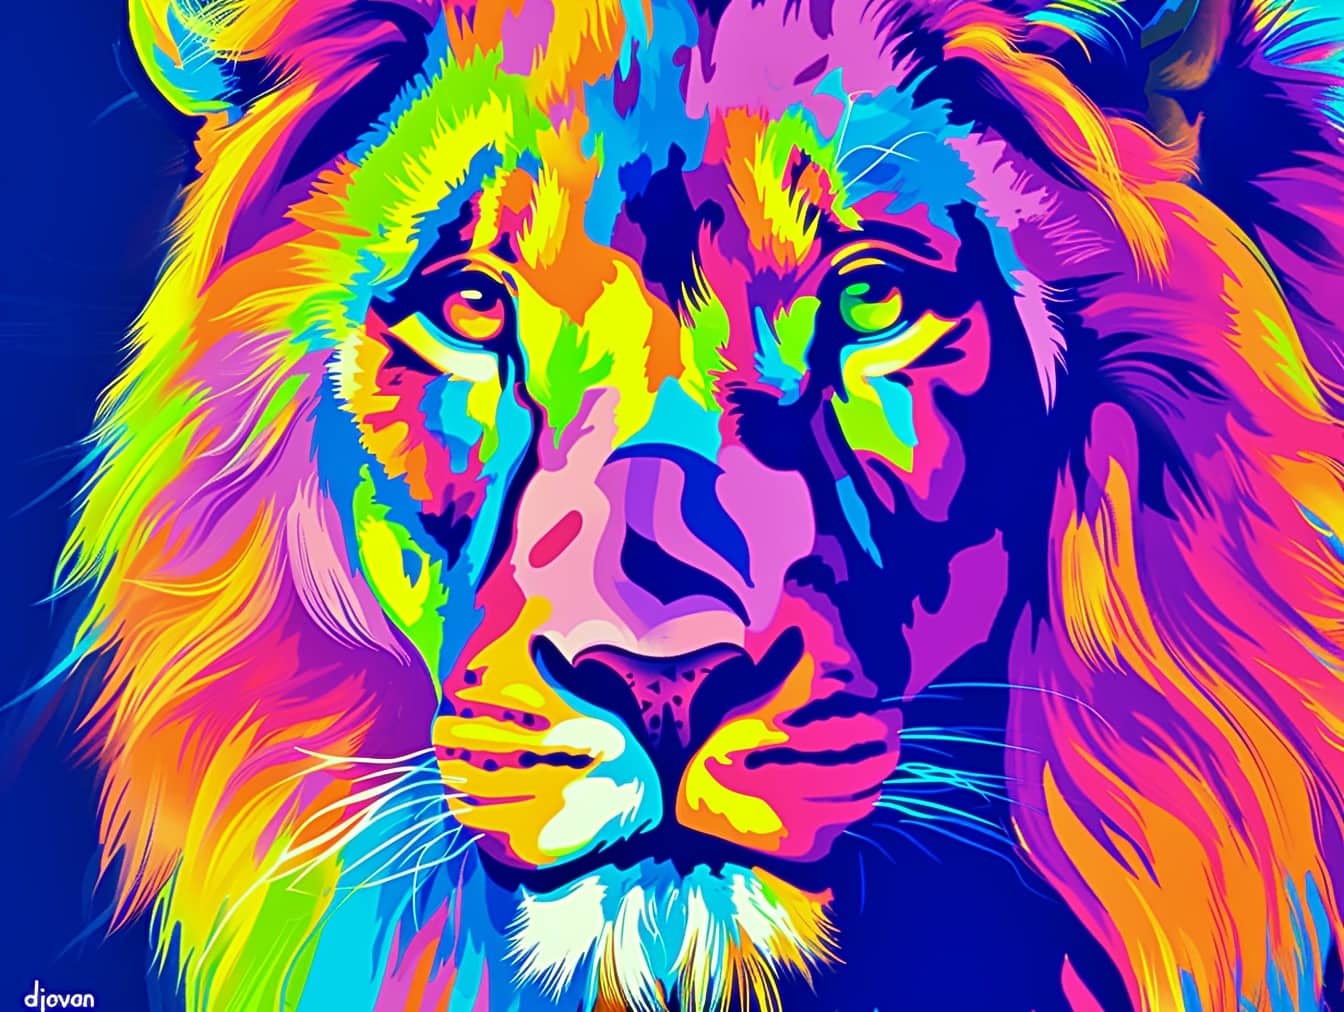 Grafica in stile pop art della testa di leone con lunga criniera colorata